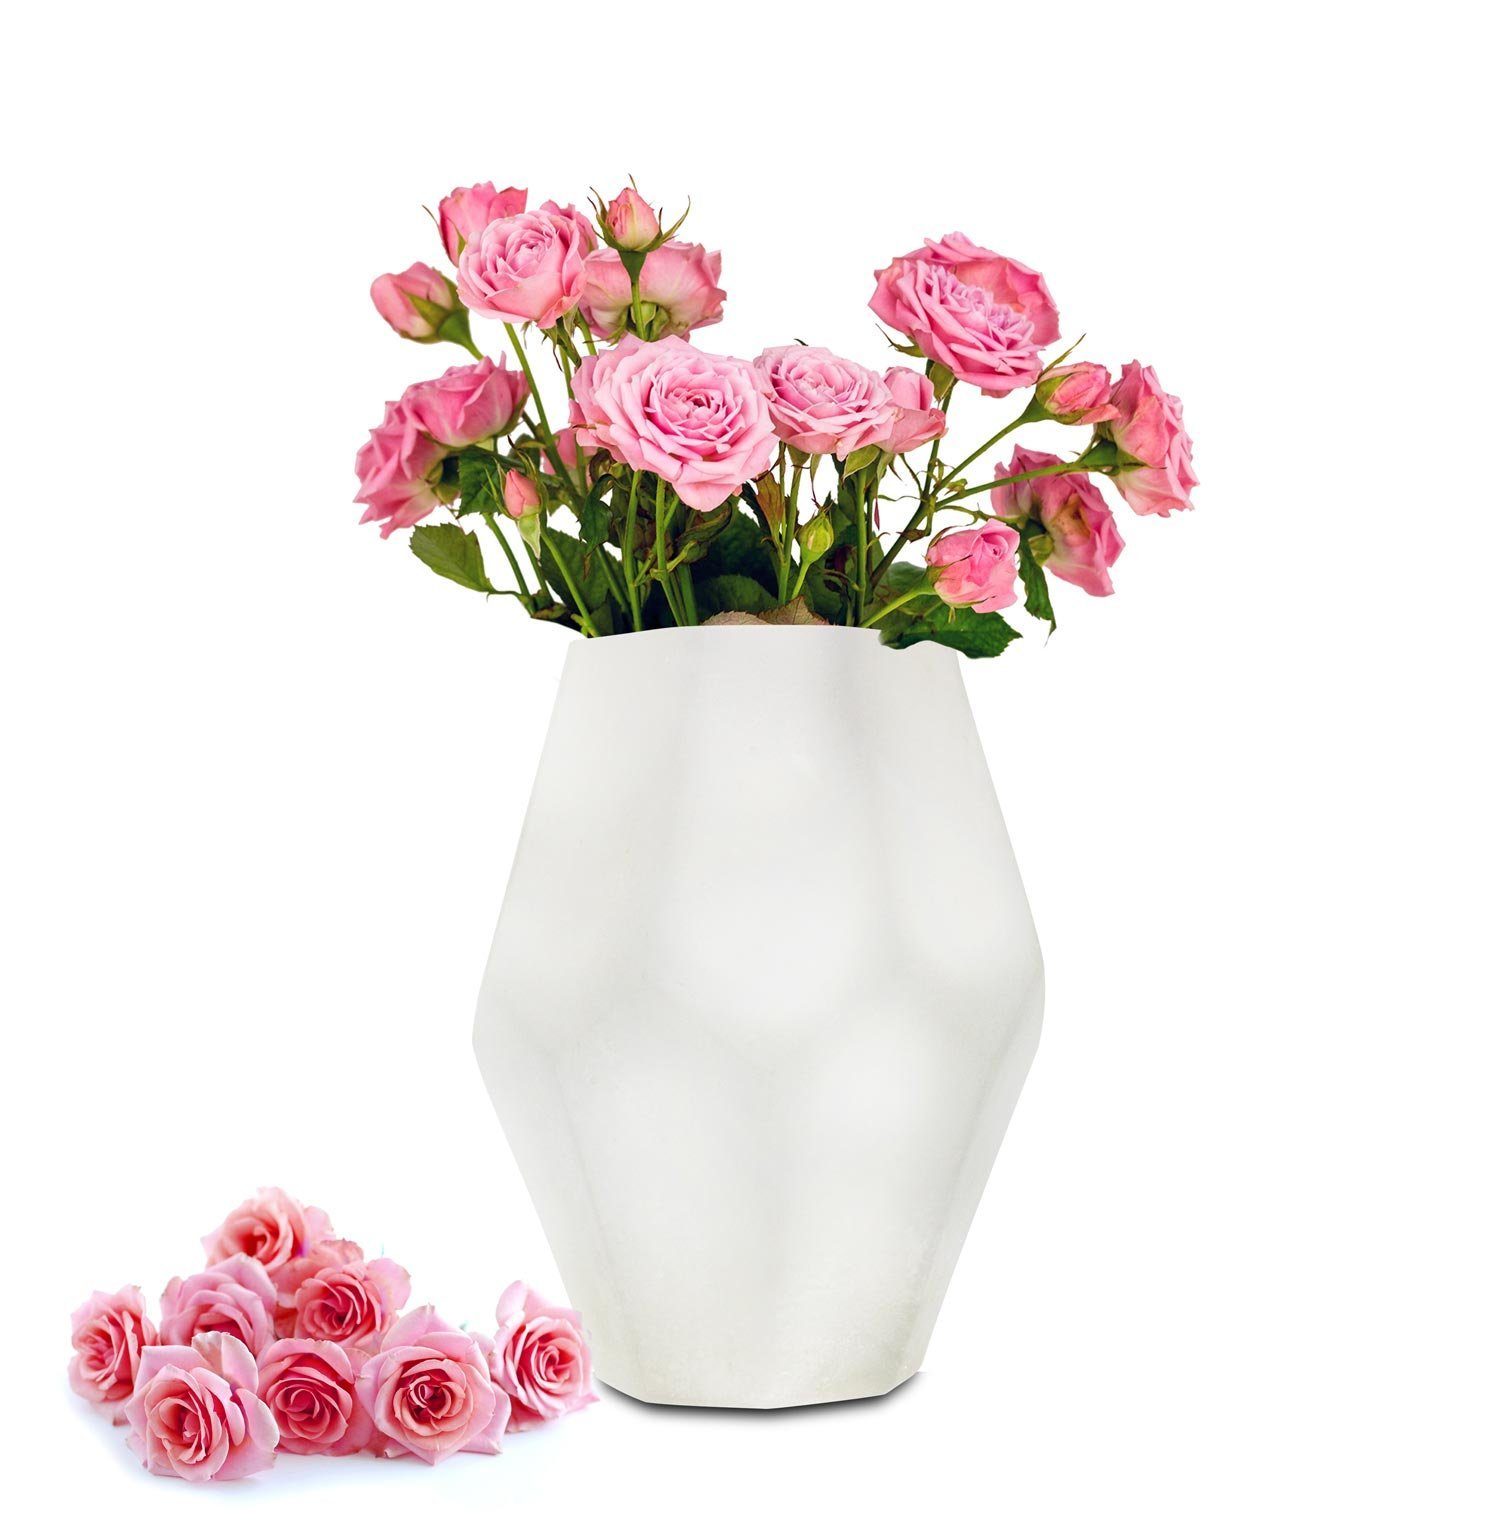 Sendez Dekovase Blumenvase Vase Tischvase Glasvase Dekovase Blumentopf Deko Weiß